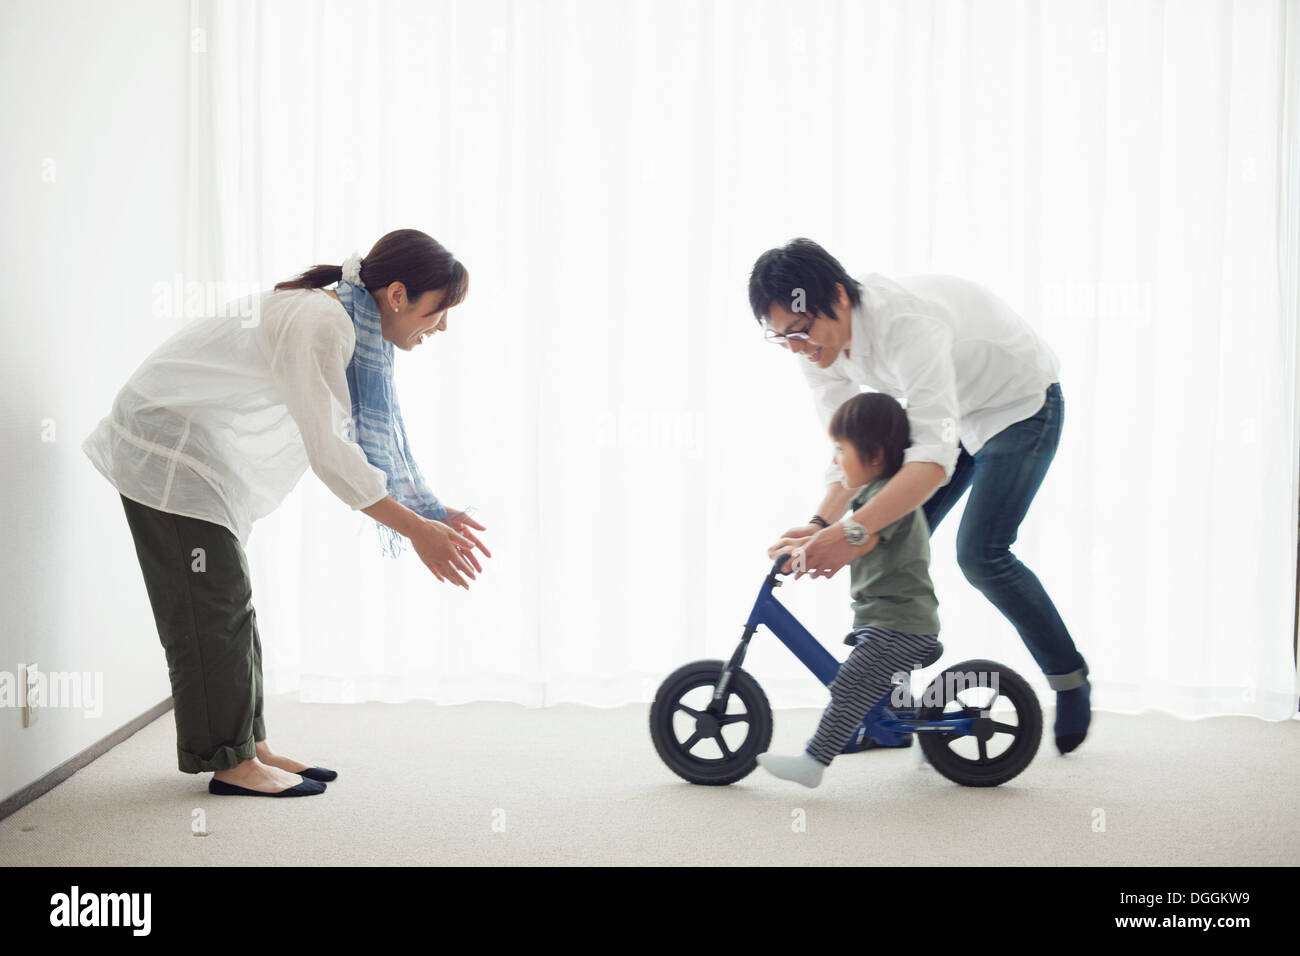 Eltern mit Sohn, Fahrrad fahren lernen Stockfoto